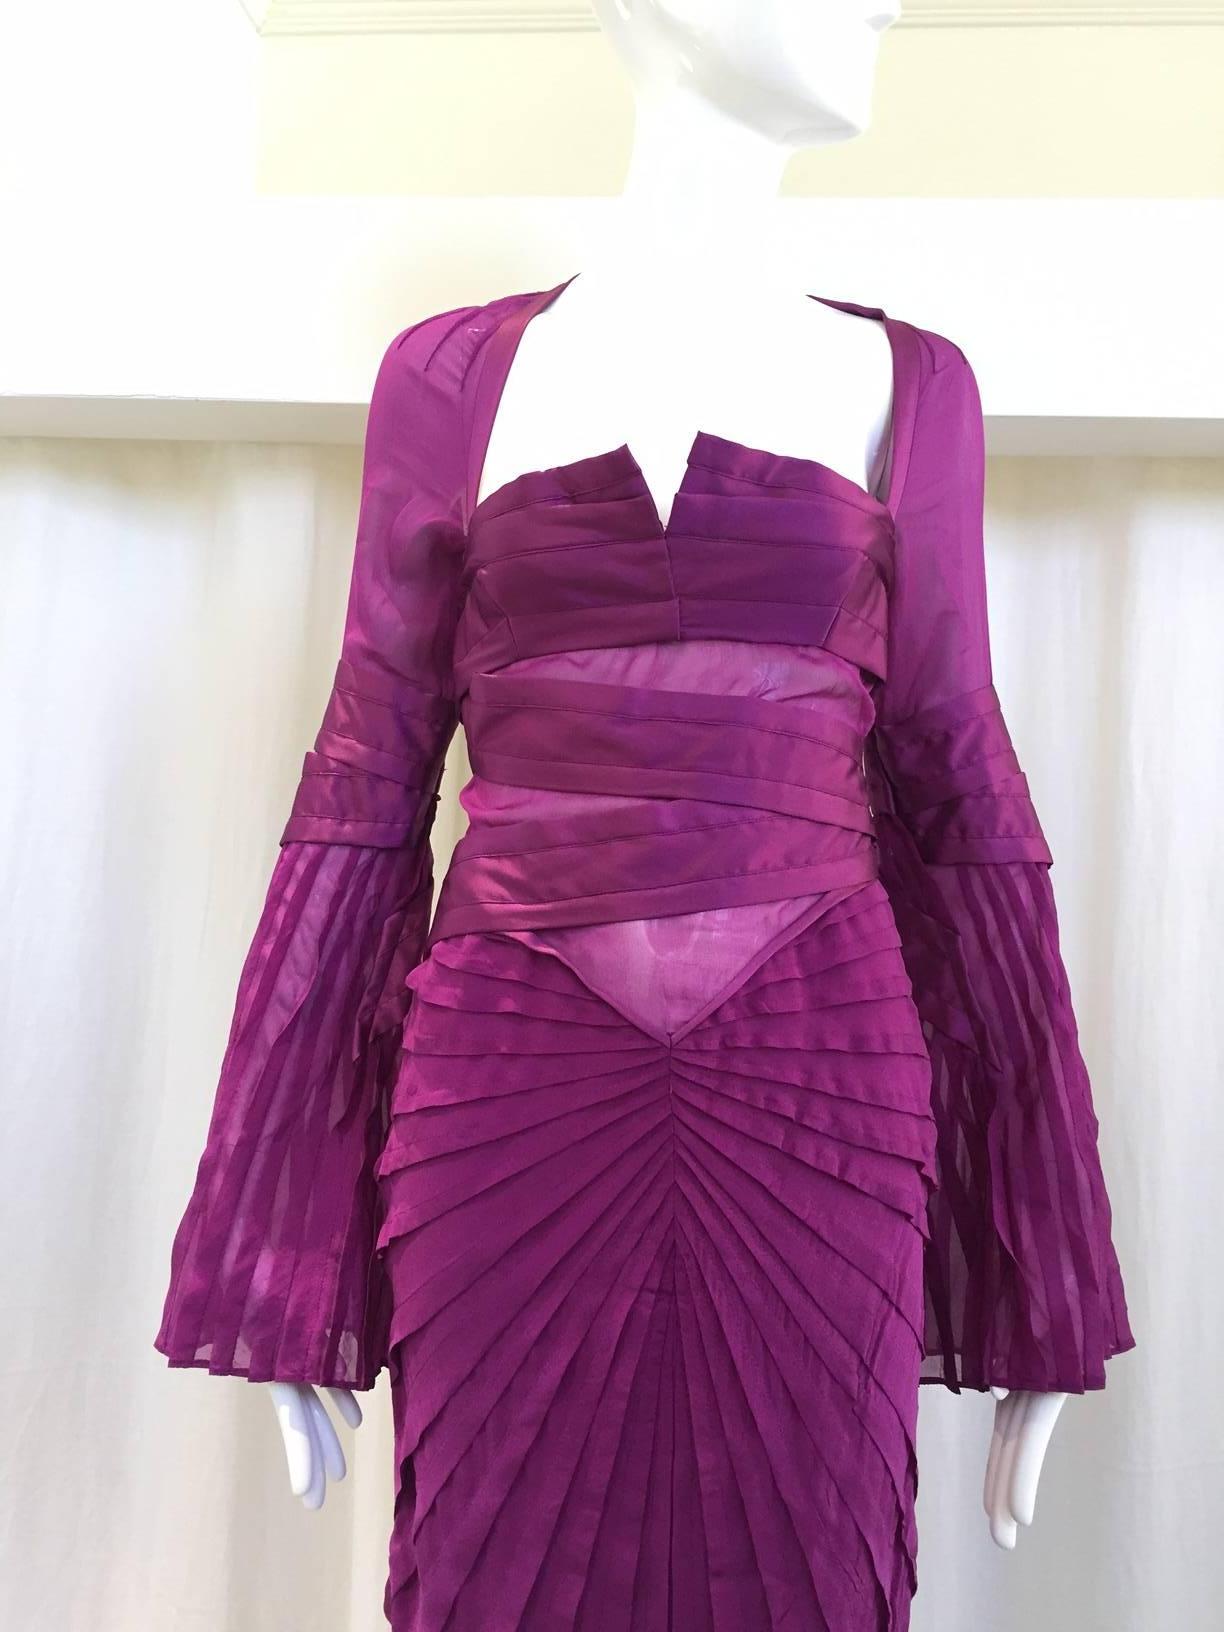  2004 Gucci purple silk dress. Size: 0/2. deadstock.

Bust 30"/ Waist: 24"/ Hip: 32"/ Dress length: 32"/ Sleeve length: 25"
